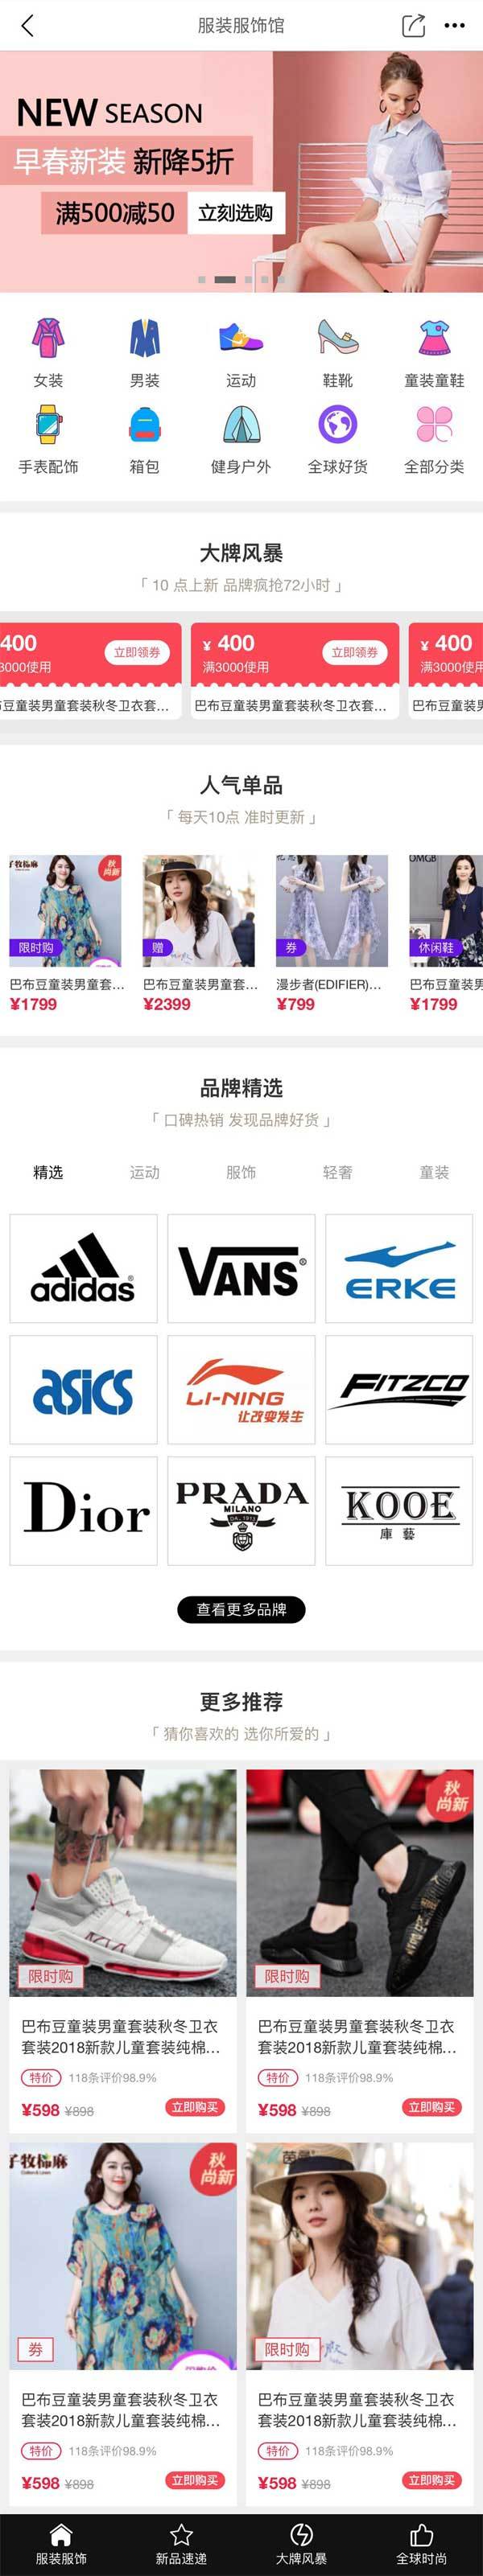 服装鞋子品牌店APP商城手机模板 html5网站源码下载 DIV+CSS代码下载